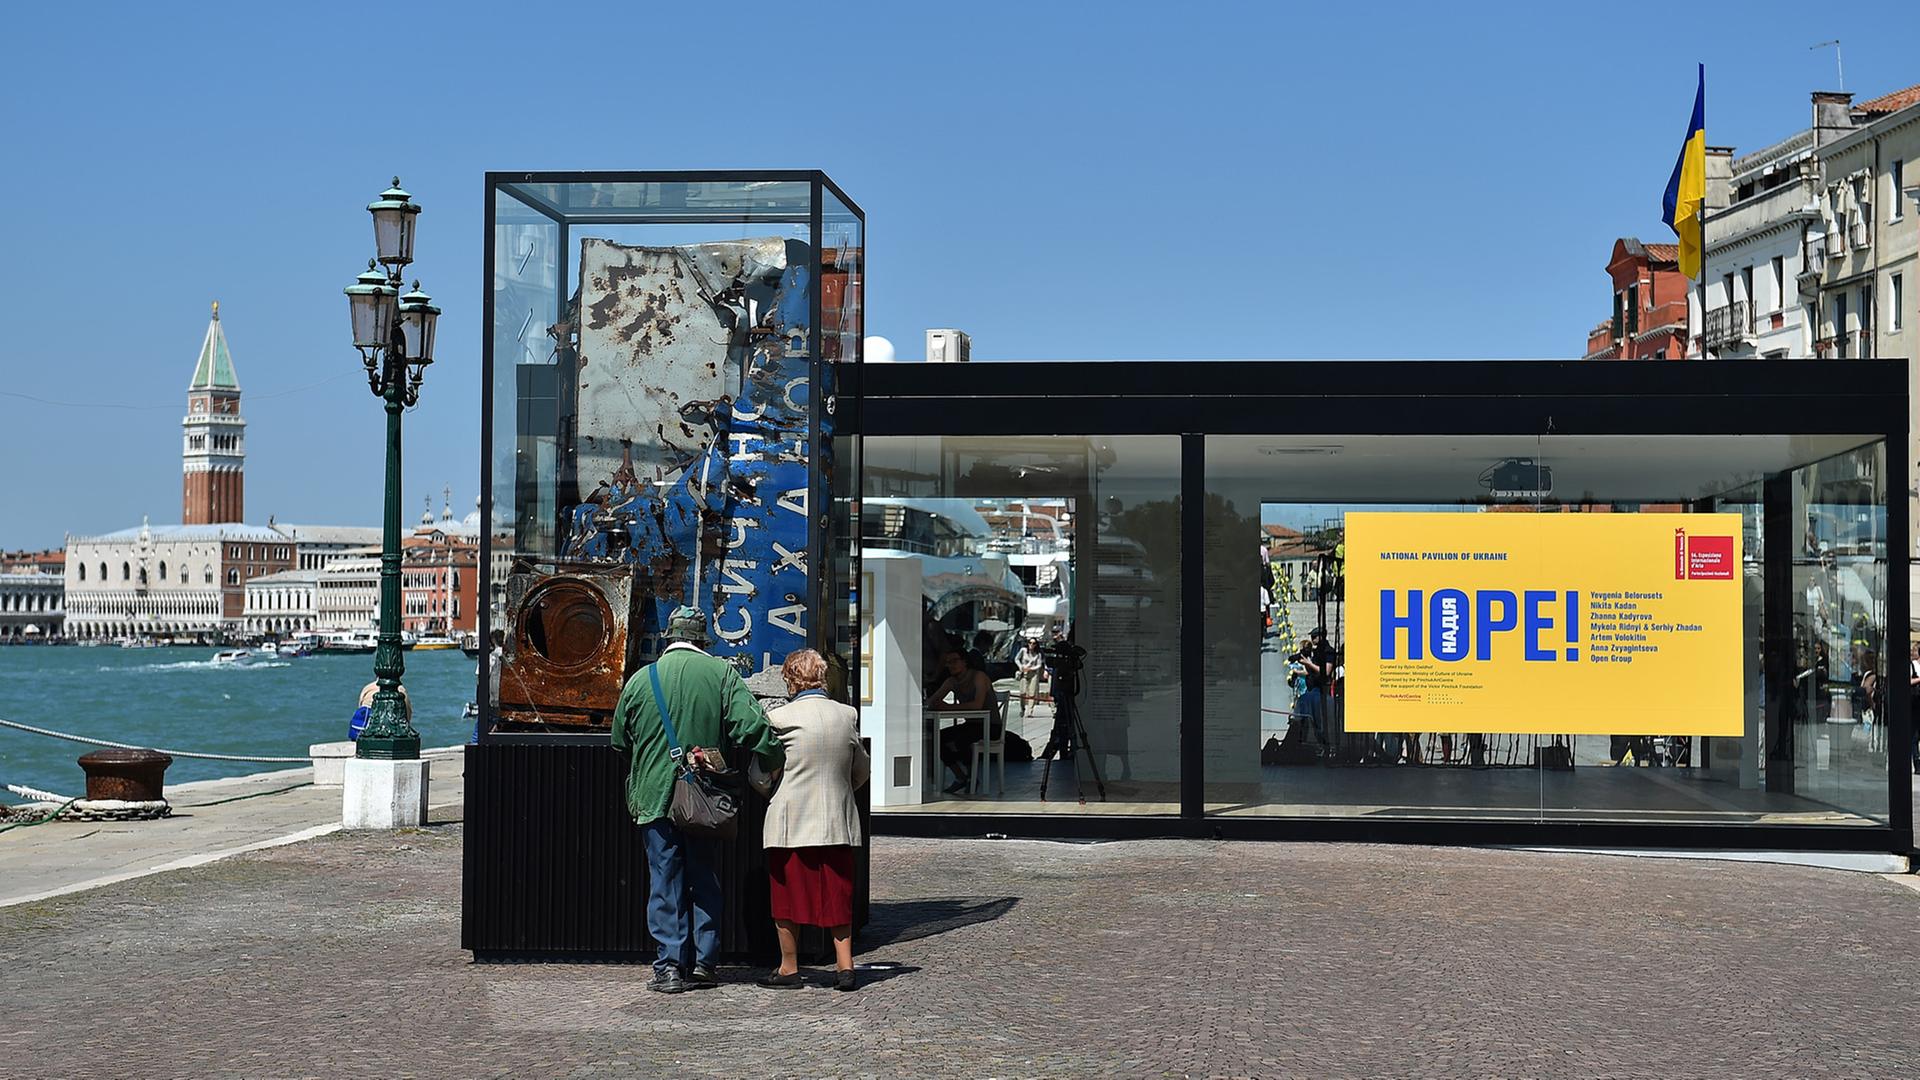 Kunstbiennale in Venedig, Mai 2015: Besucher vor dem Pavillon der Ukraine, den der Oligarch Wictor Pinchuk finanziert hat. Der Titel der Ausstellung junger ukrainischer lautet "Hope!" – Hoffnung.